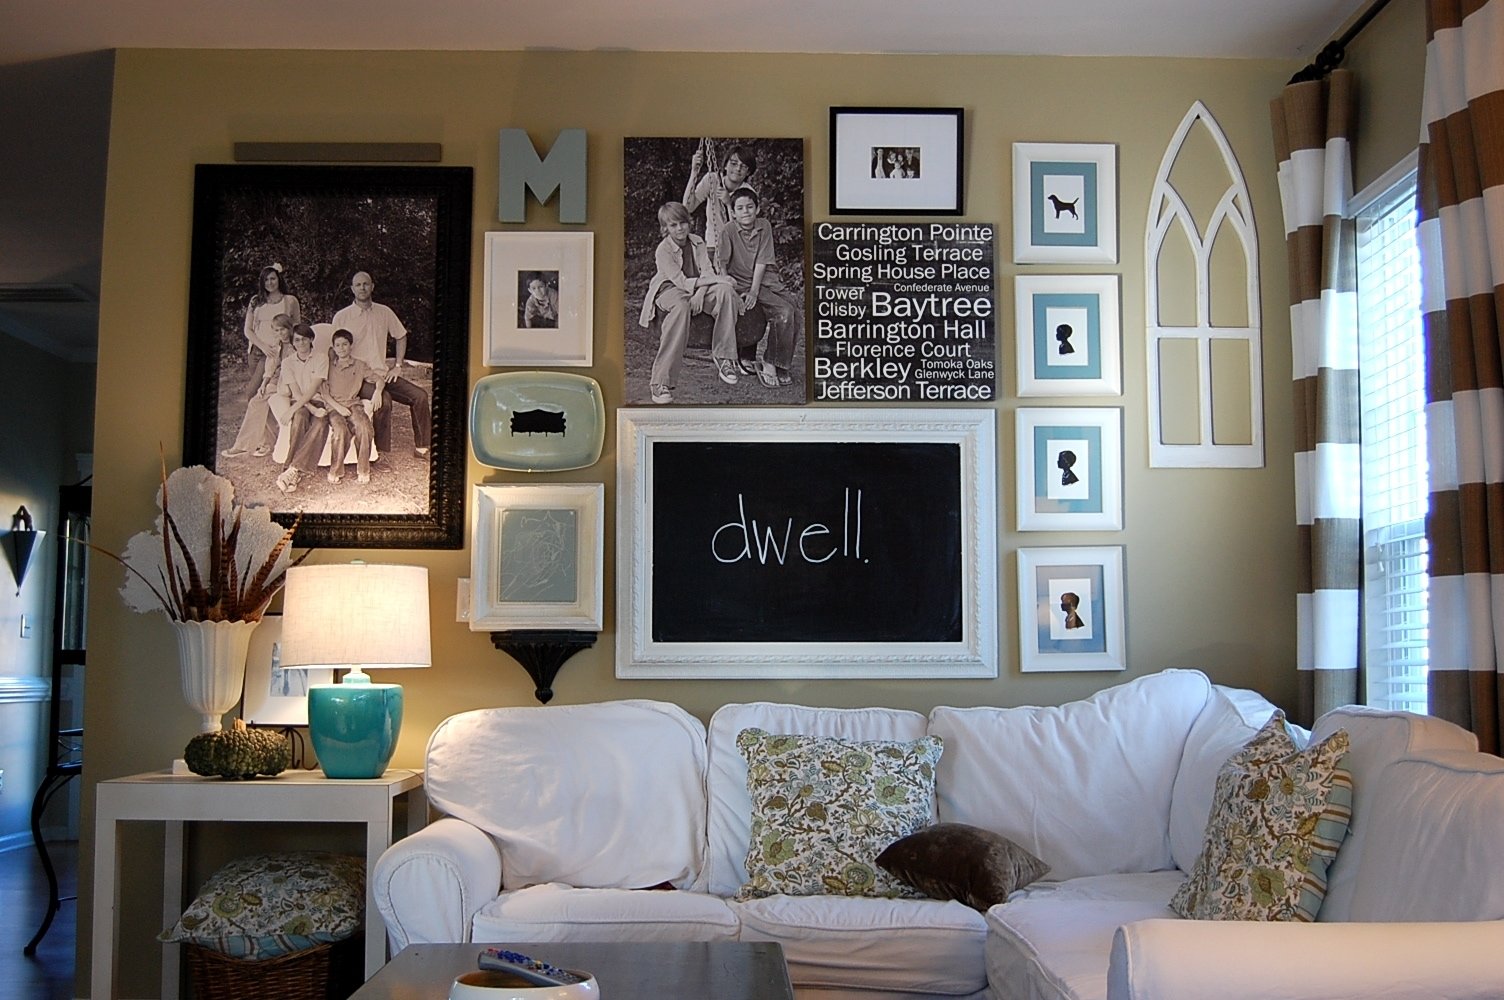 10 Stylish Wall Decor Ideas For Family Room wall decor ideas for family room piebirddesign 2022